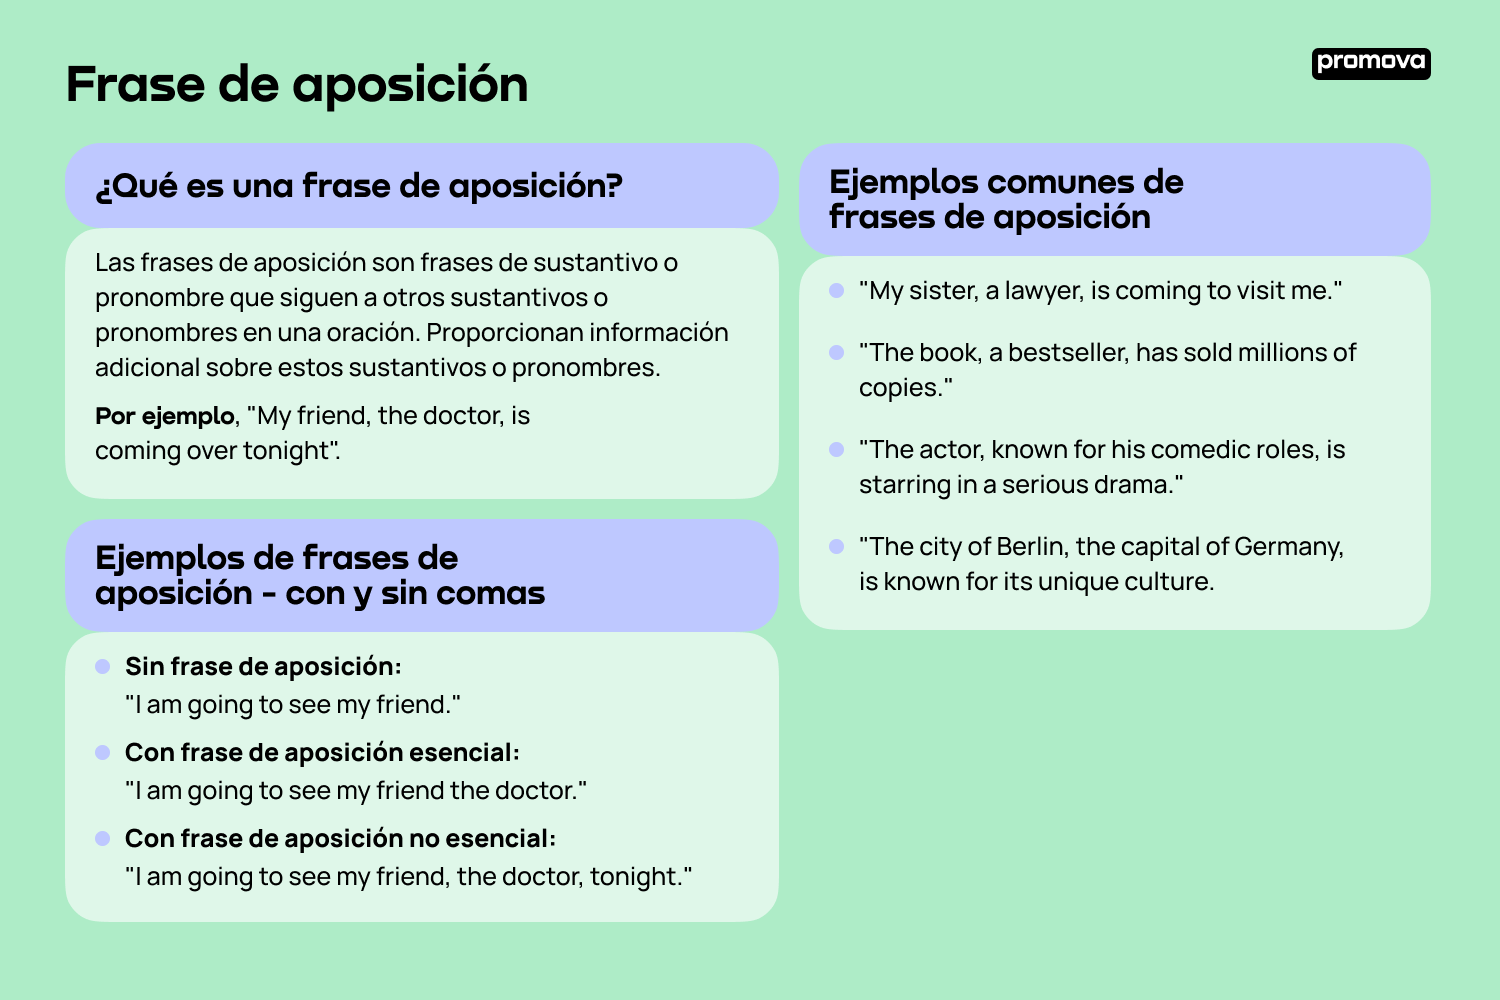 Domina la estructura y uso de las frases de aposición en inglés